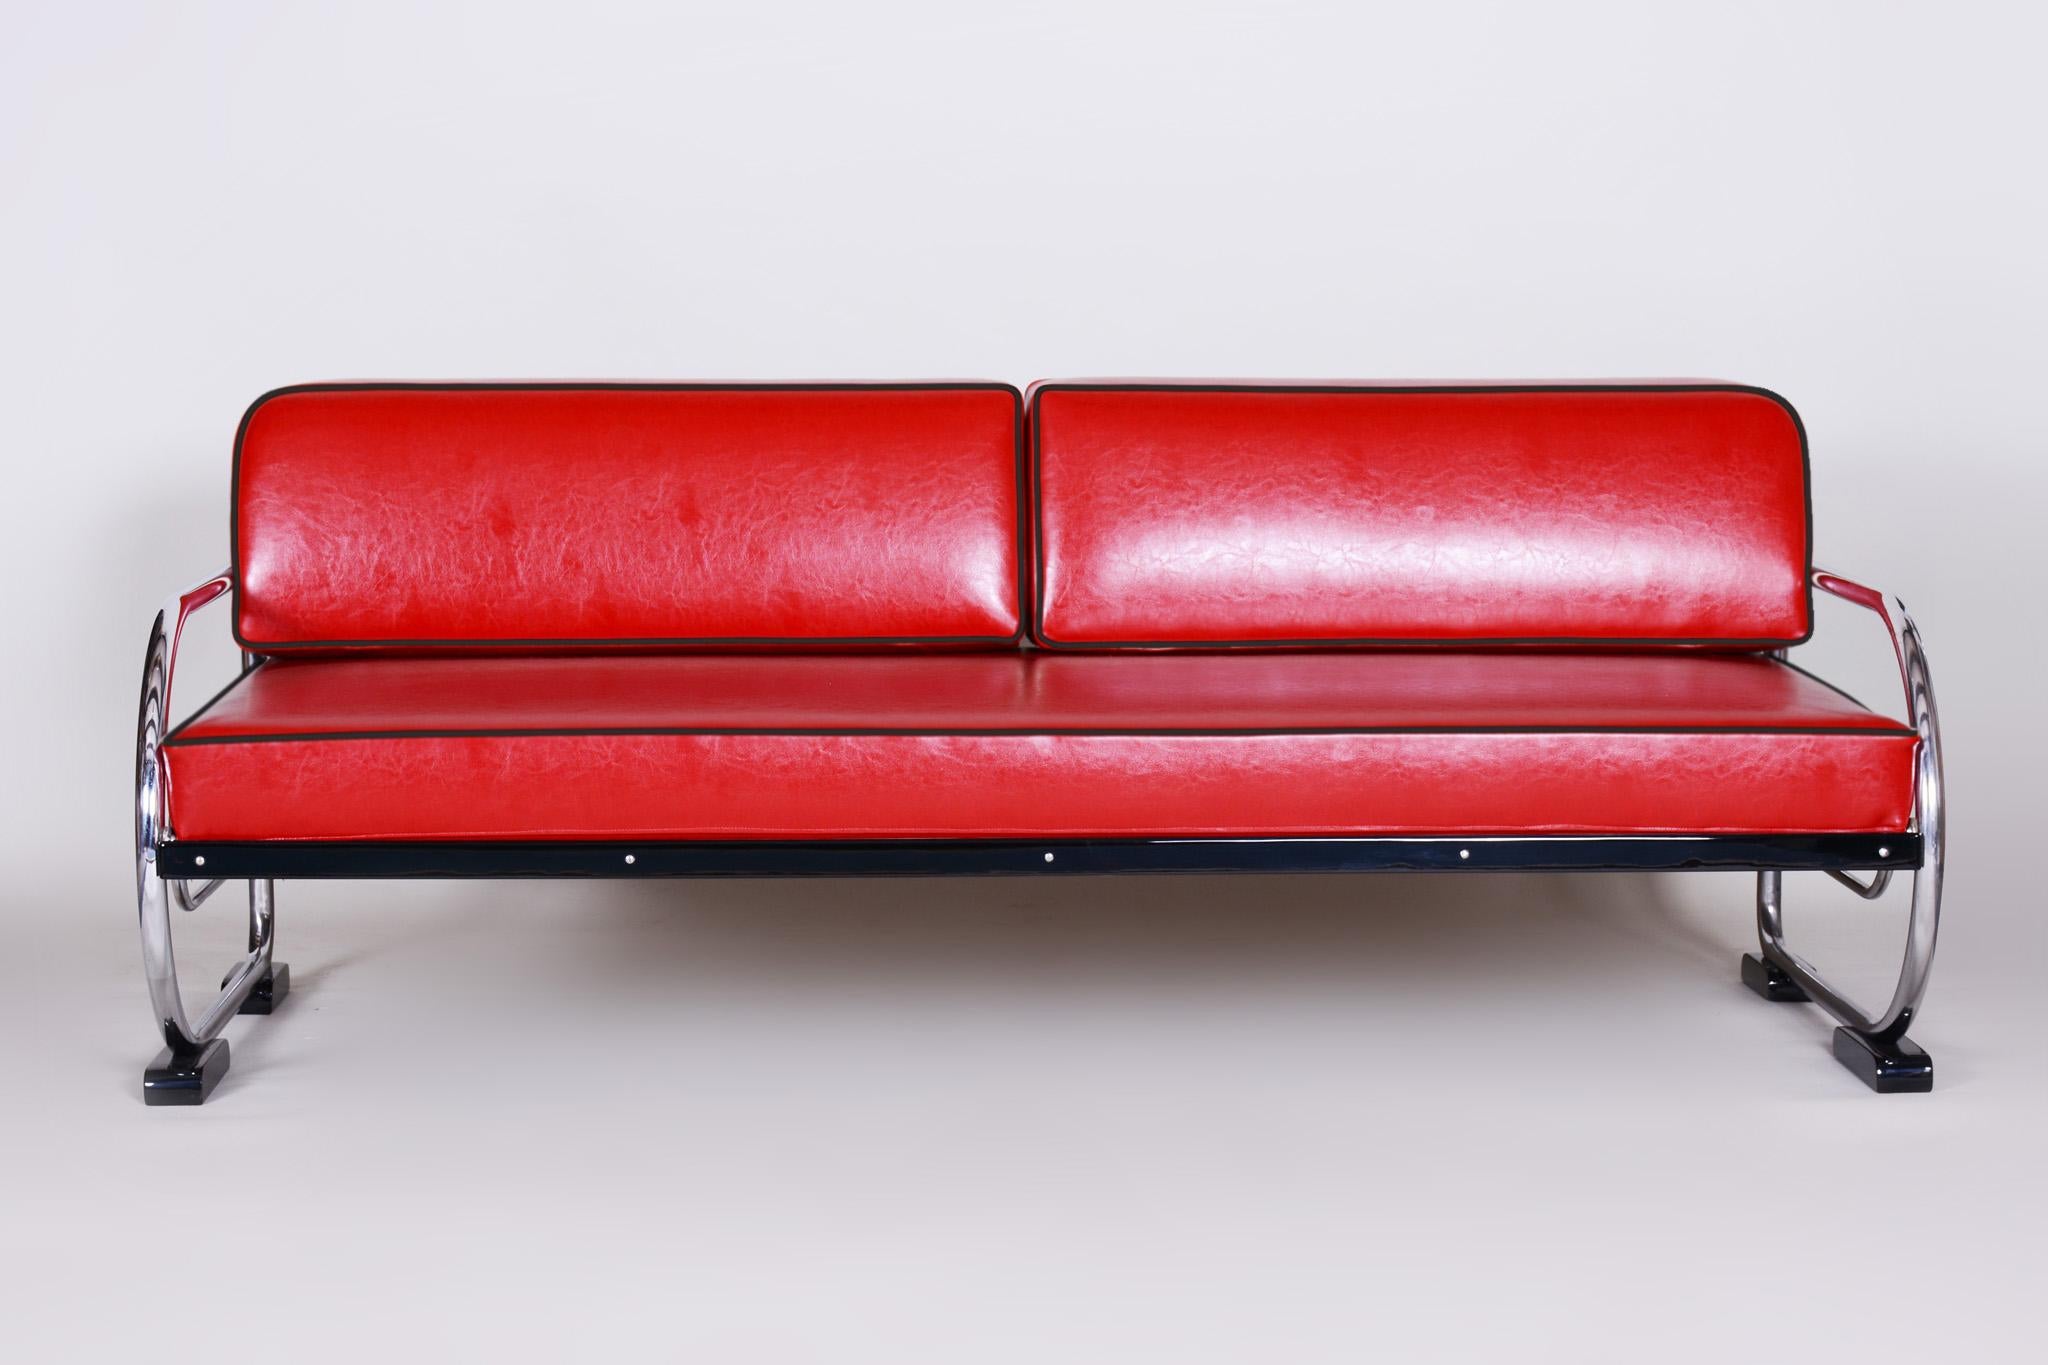 Sofa im Bauhaus-Stil mit einem Gestell aus lackiertem Holz und verchromtem Stahlrohr.
Hergestellt von Robert Slezák in den 1930er Jahren.
Das verchromte Stahlrohr ist in perfektem Originalzustand.
Gepolstert mit hochwertigem rotem Leder.
Quelle: